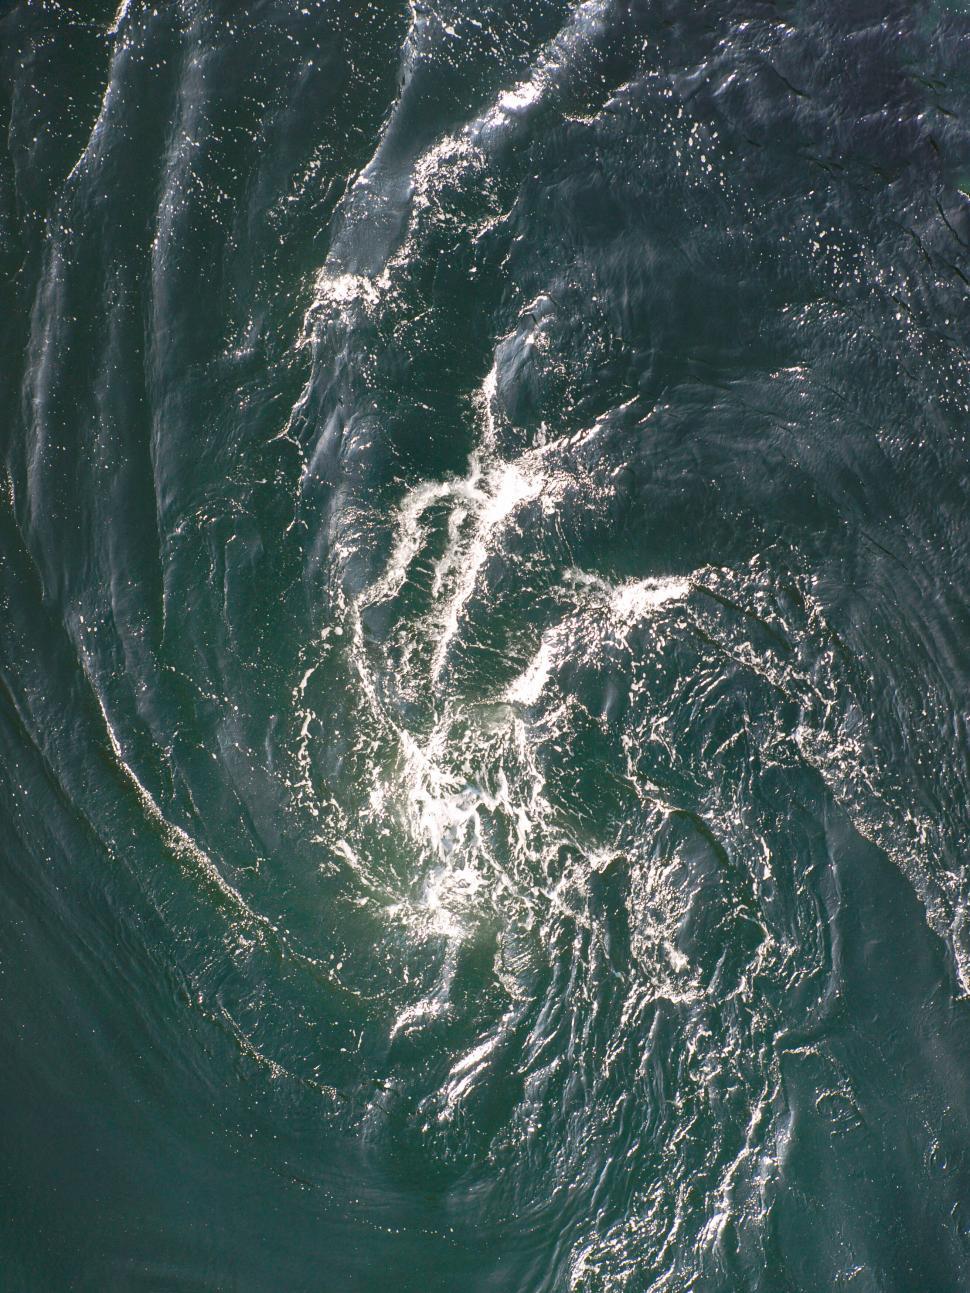 Free Image of Whirlpools in a Dark Swirling Ocean 